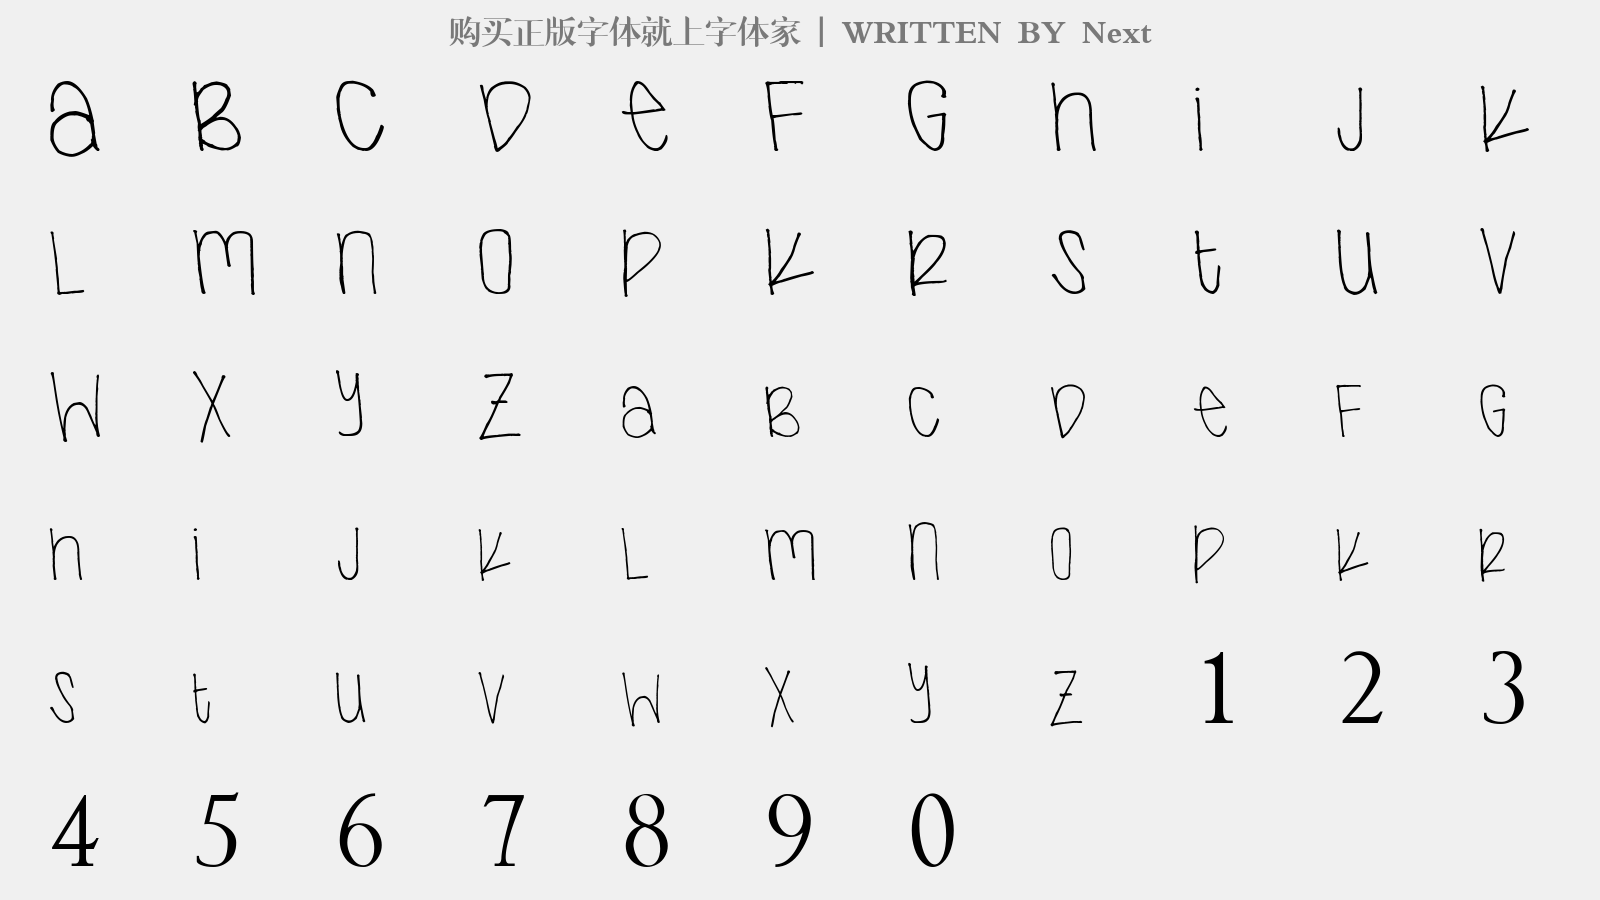 Next - 大写字母/小写字母/数字